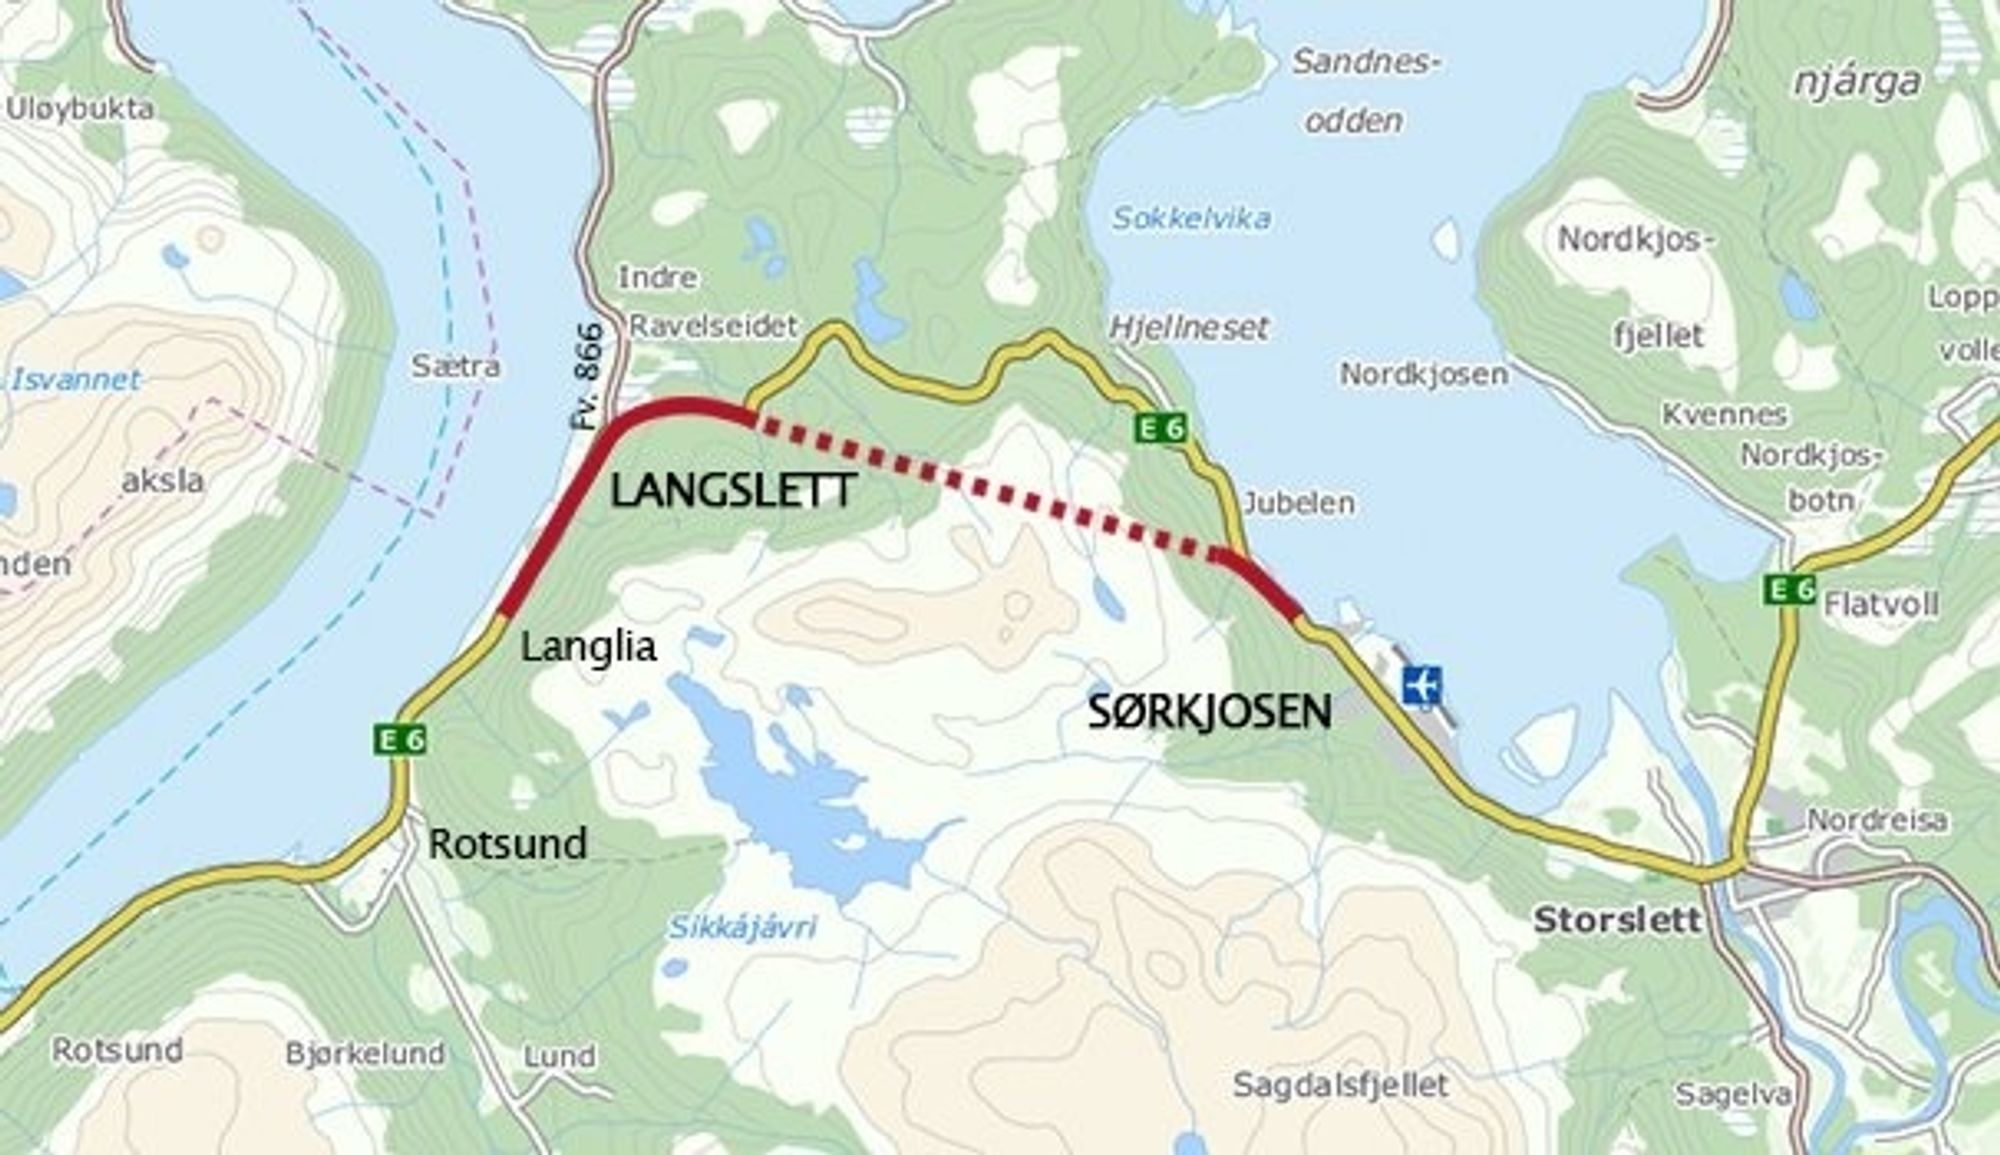 Statens vegvesen er frifunnet for samtlige krav fra OSSA etter at entreprenørselskapet ble sparket fra jobben i Sørkjostunnelen.